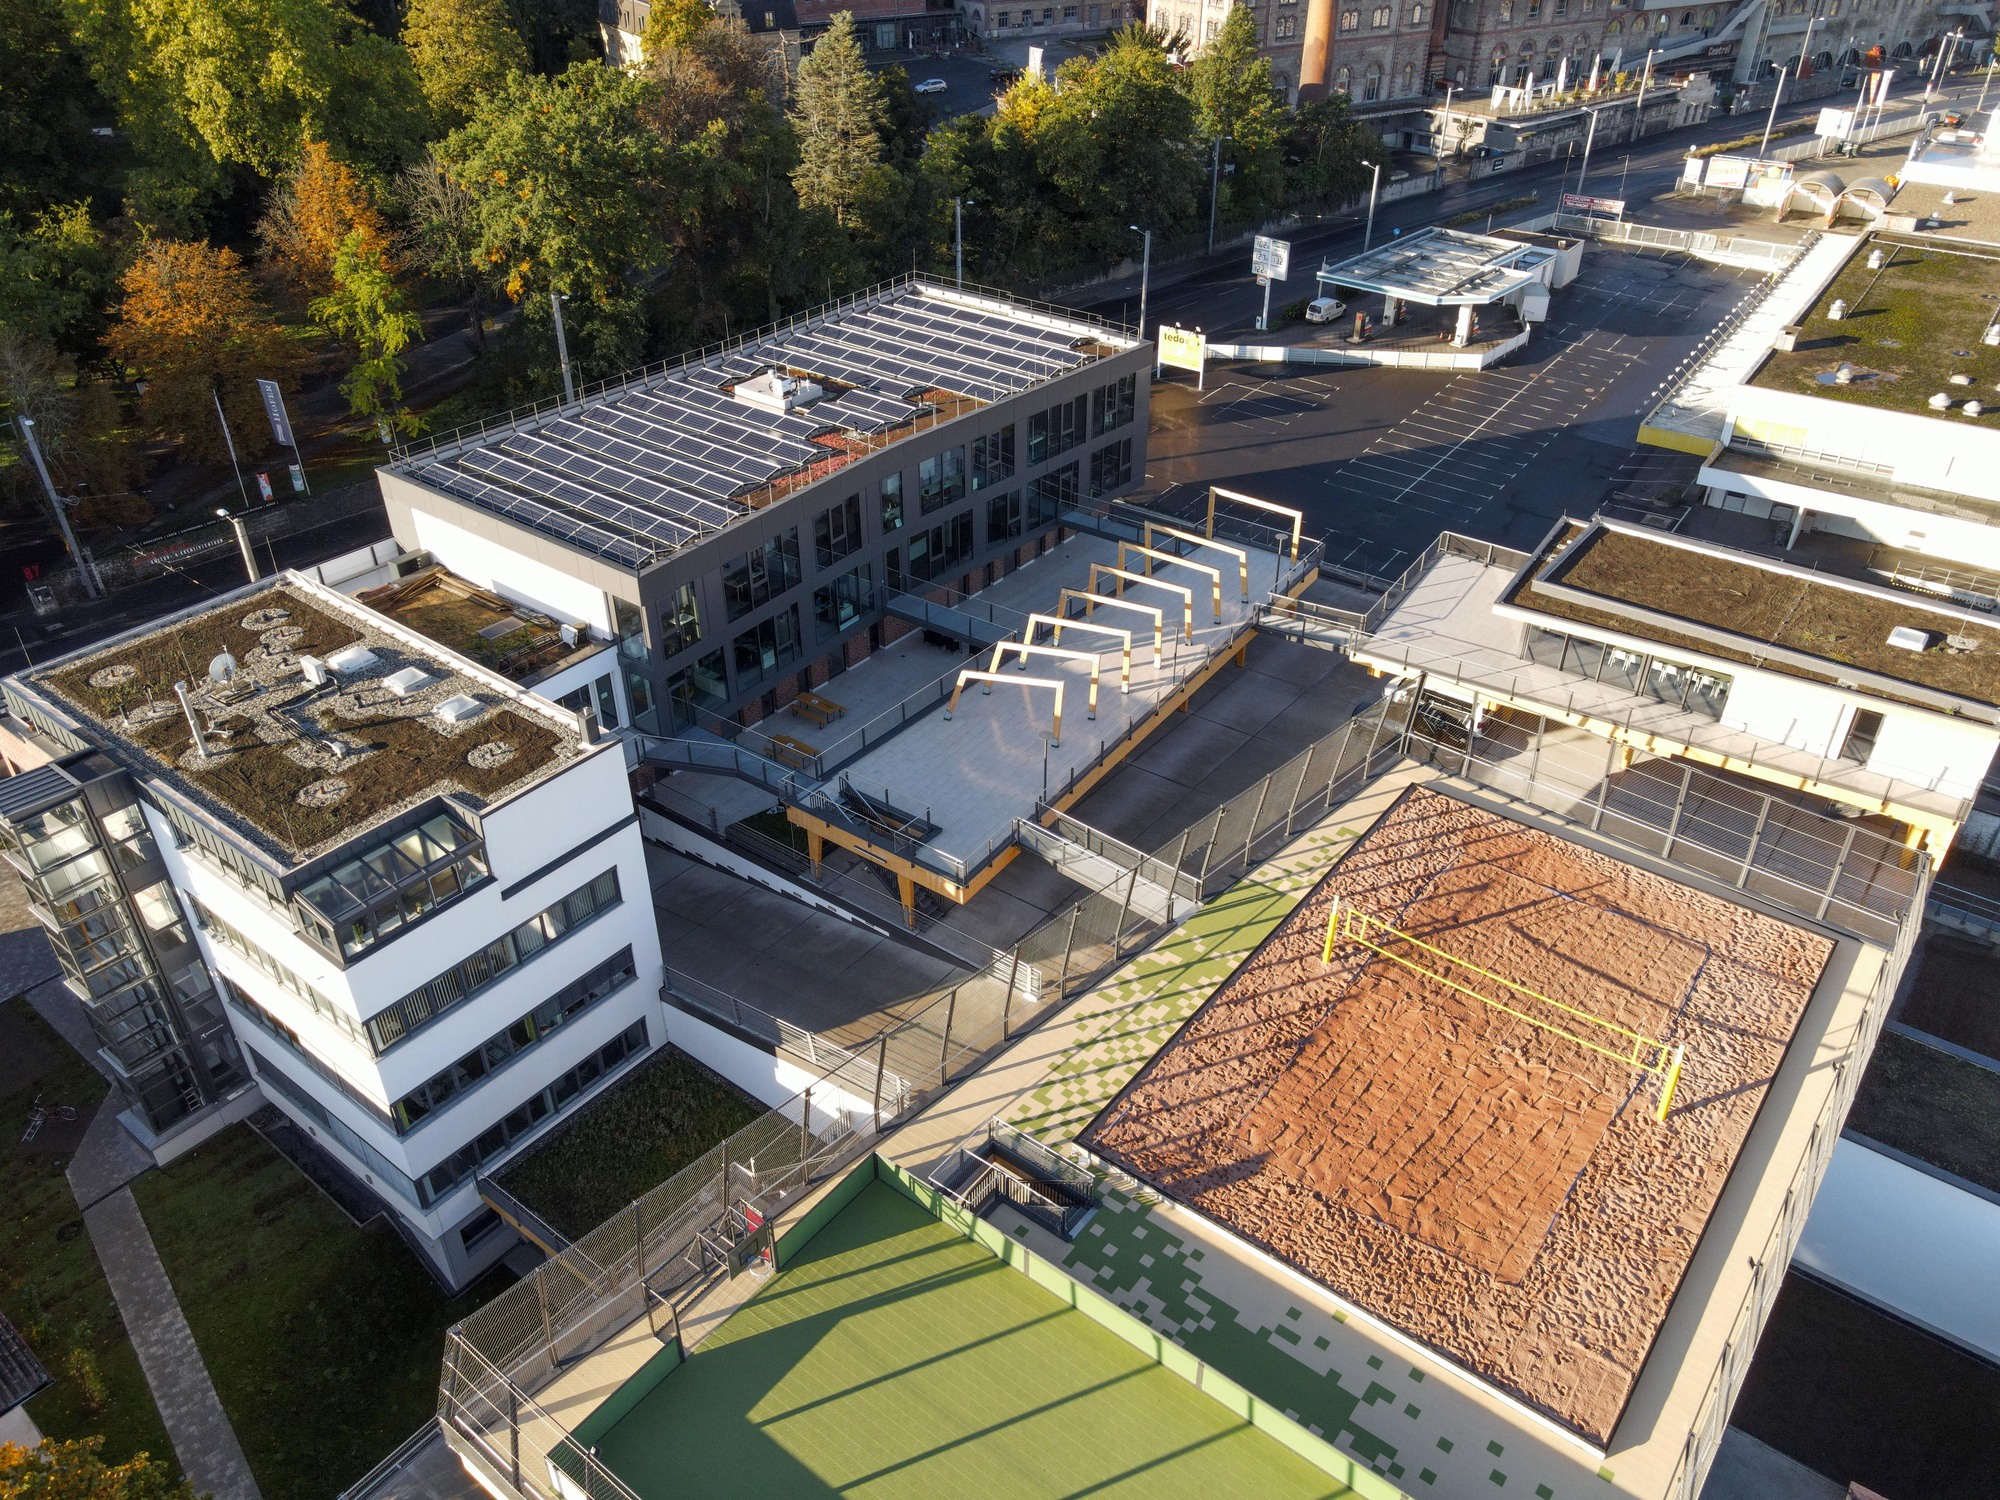 Luftaufnahme des Gebäudes Beach- und Businesscampus in Würzburg, welches vielfältige Dachflächen zeigt, wie ein Beach-Volleyball-Feld oder Photovoltaik-Anlagen